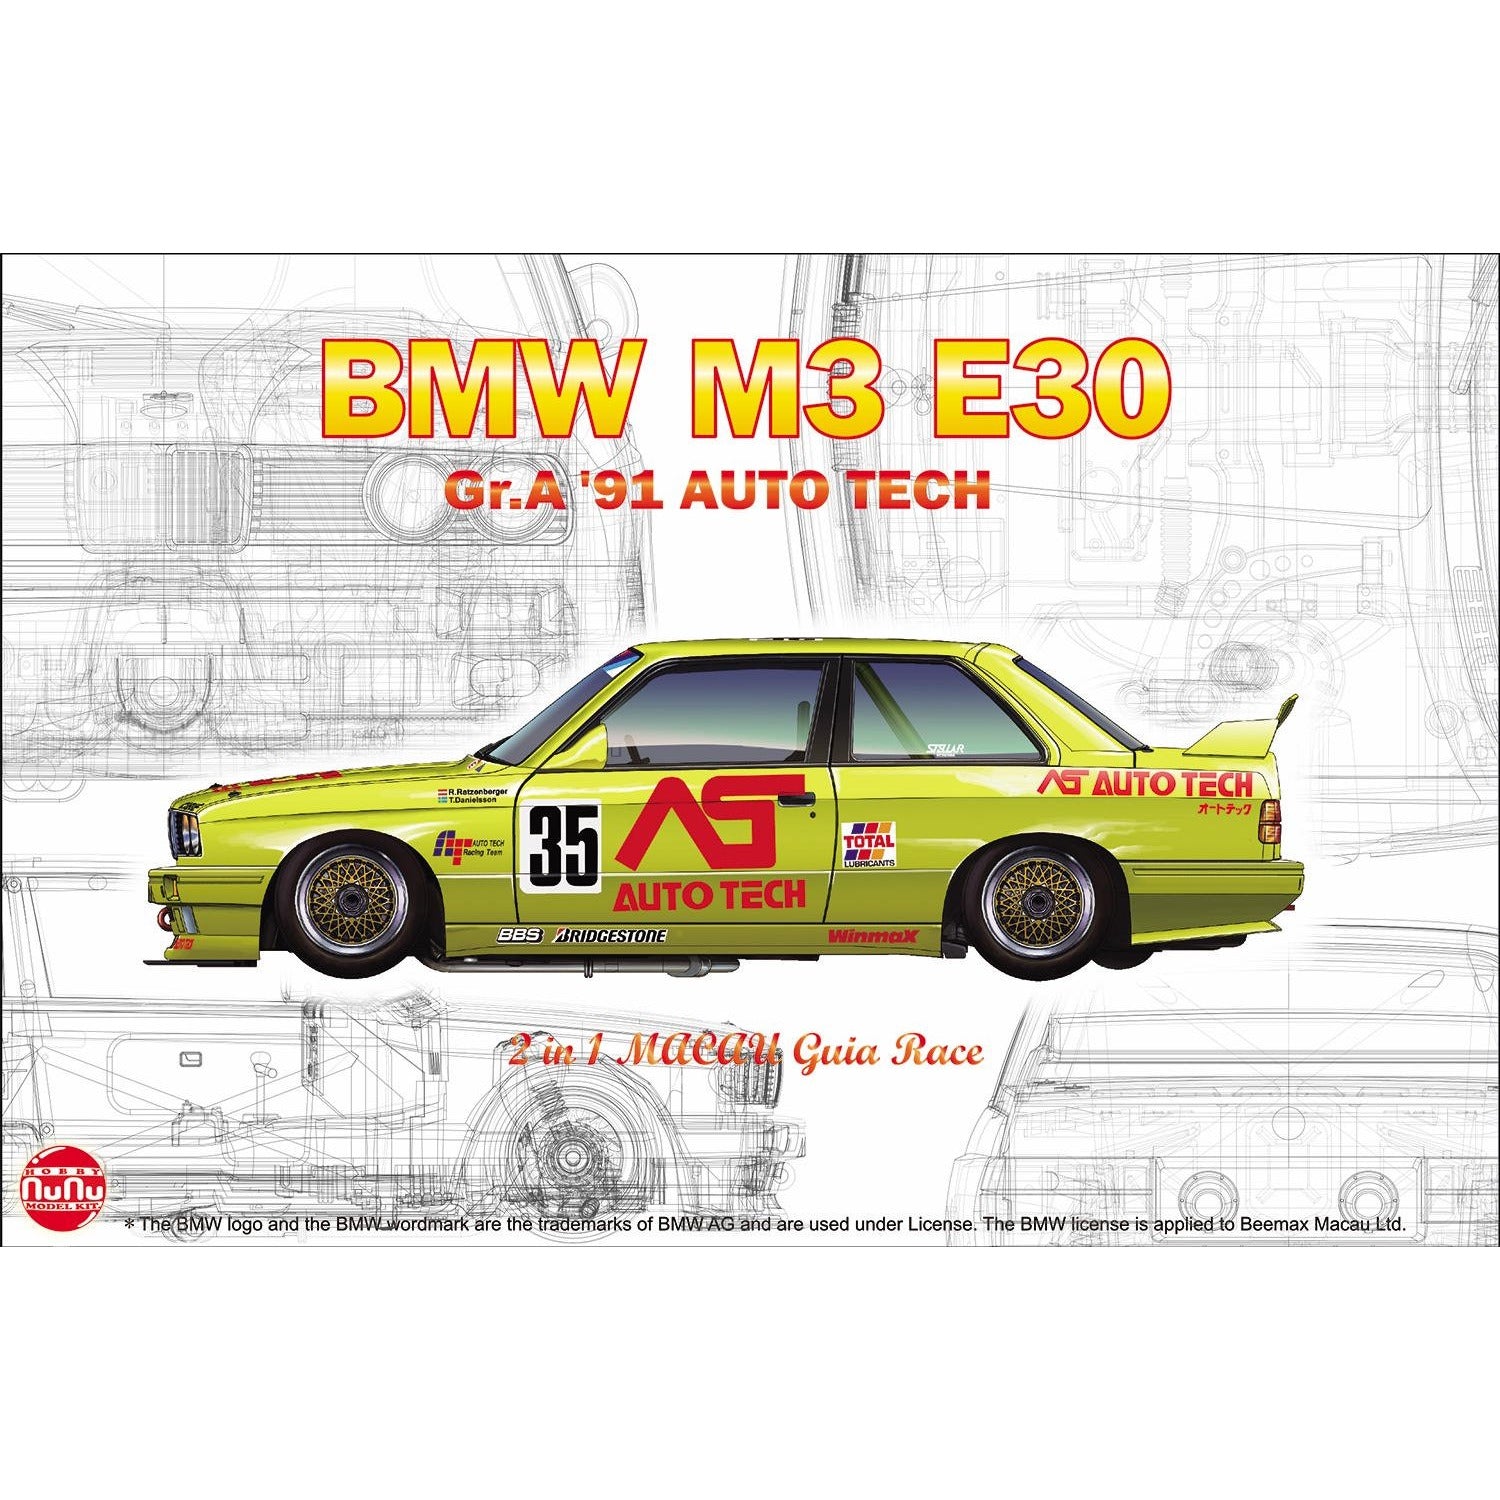 BMW M3 E30 Gr.A 91 AUTO TECH, Vehicle 1/24 Model Car Kit #PN24014 by Platz Nunu